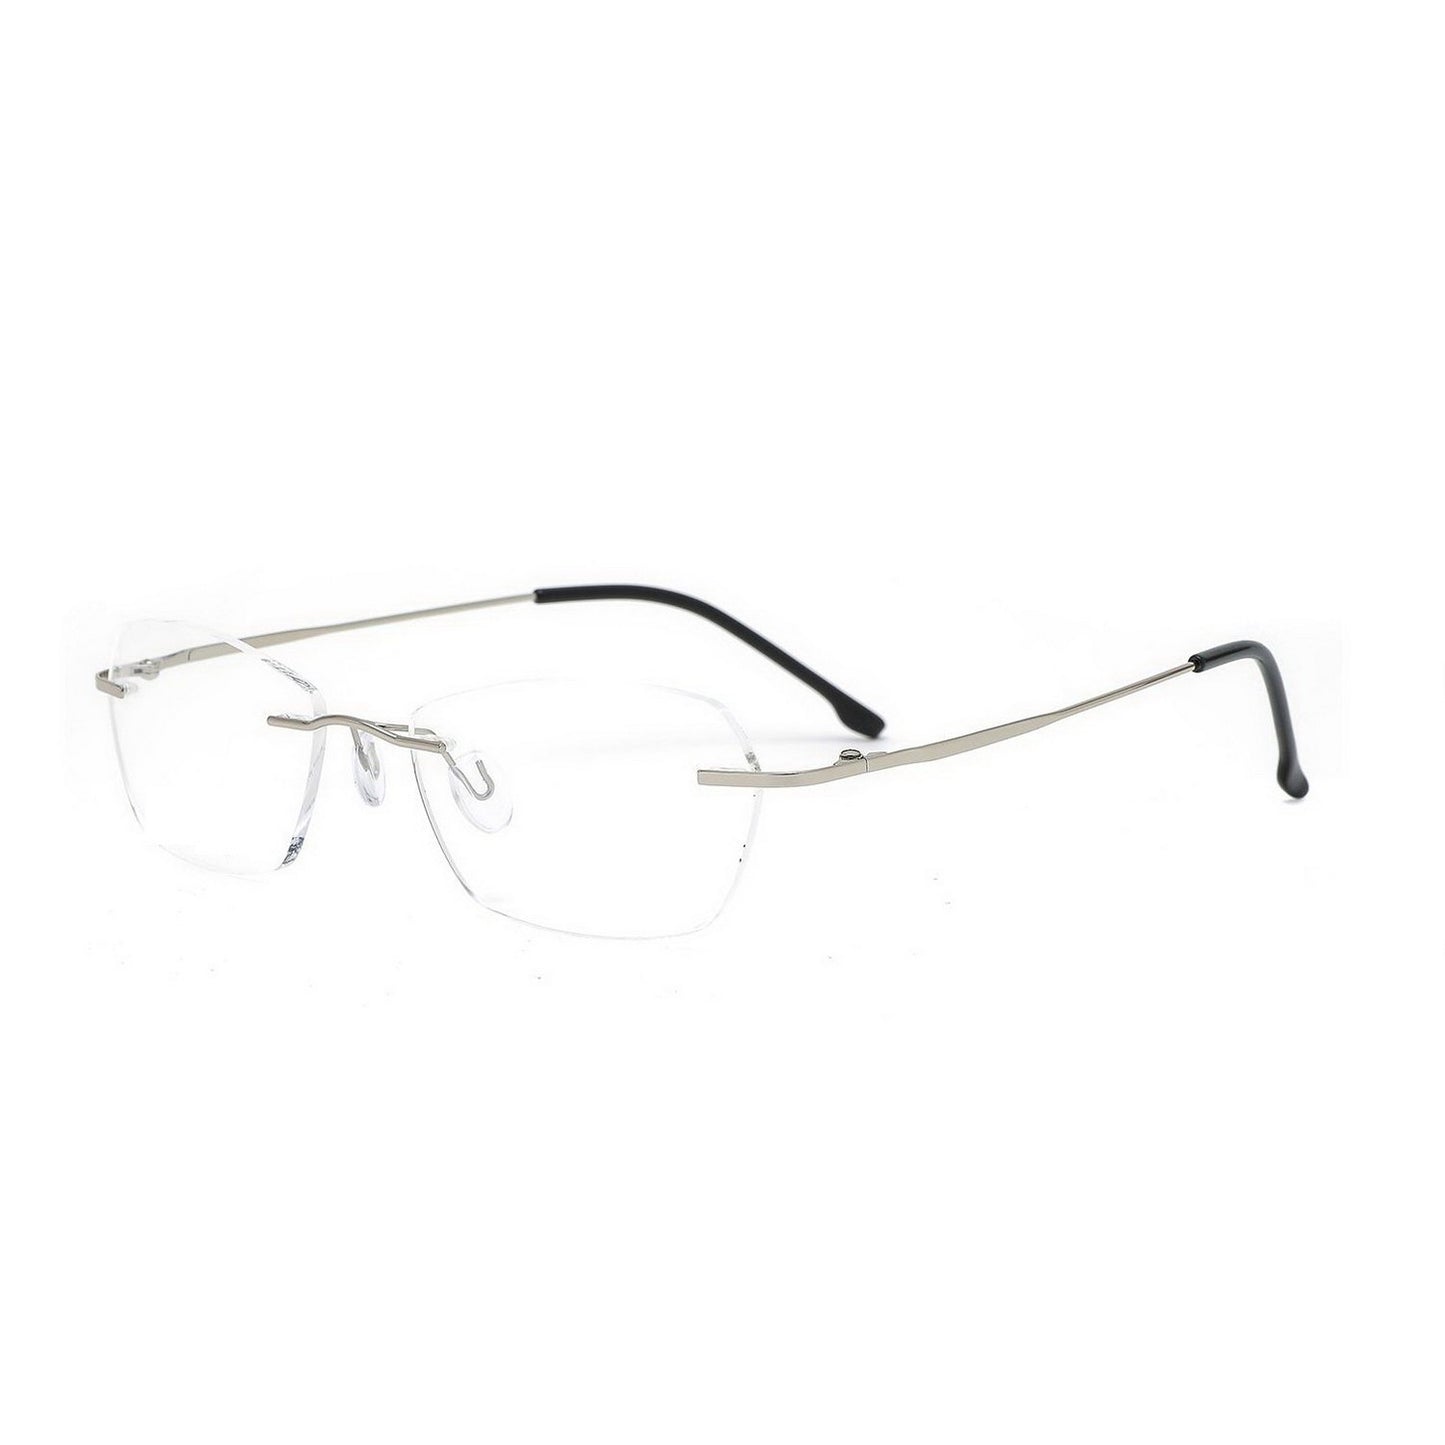 Elegant Pento Rimless Glasses Spectacle Frame